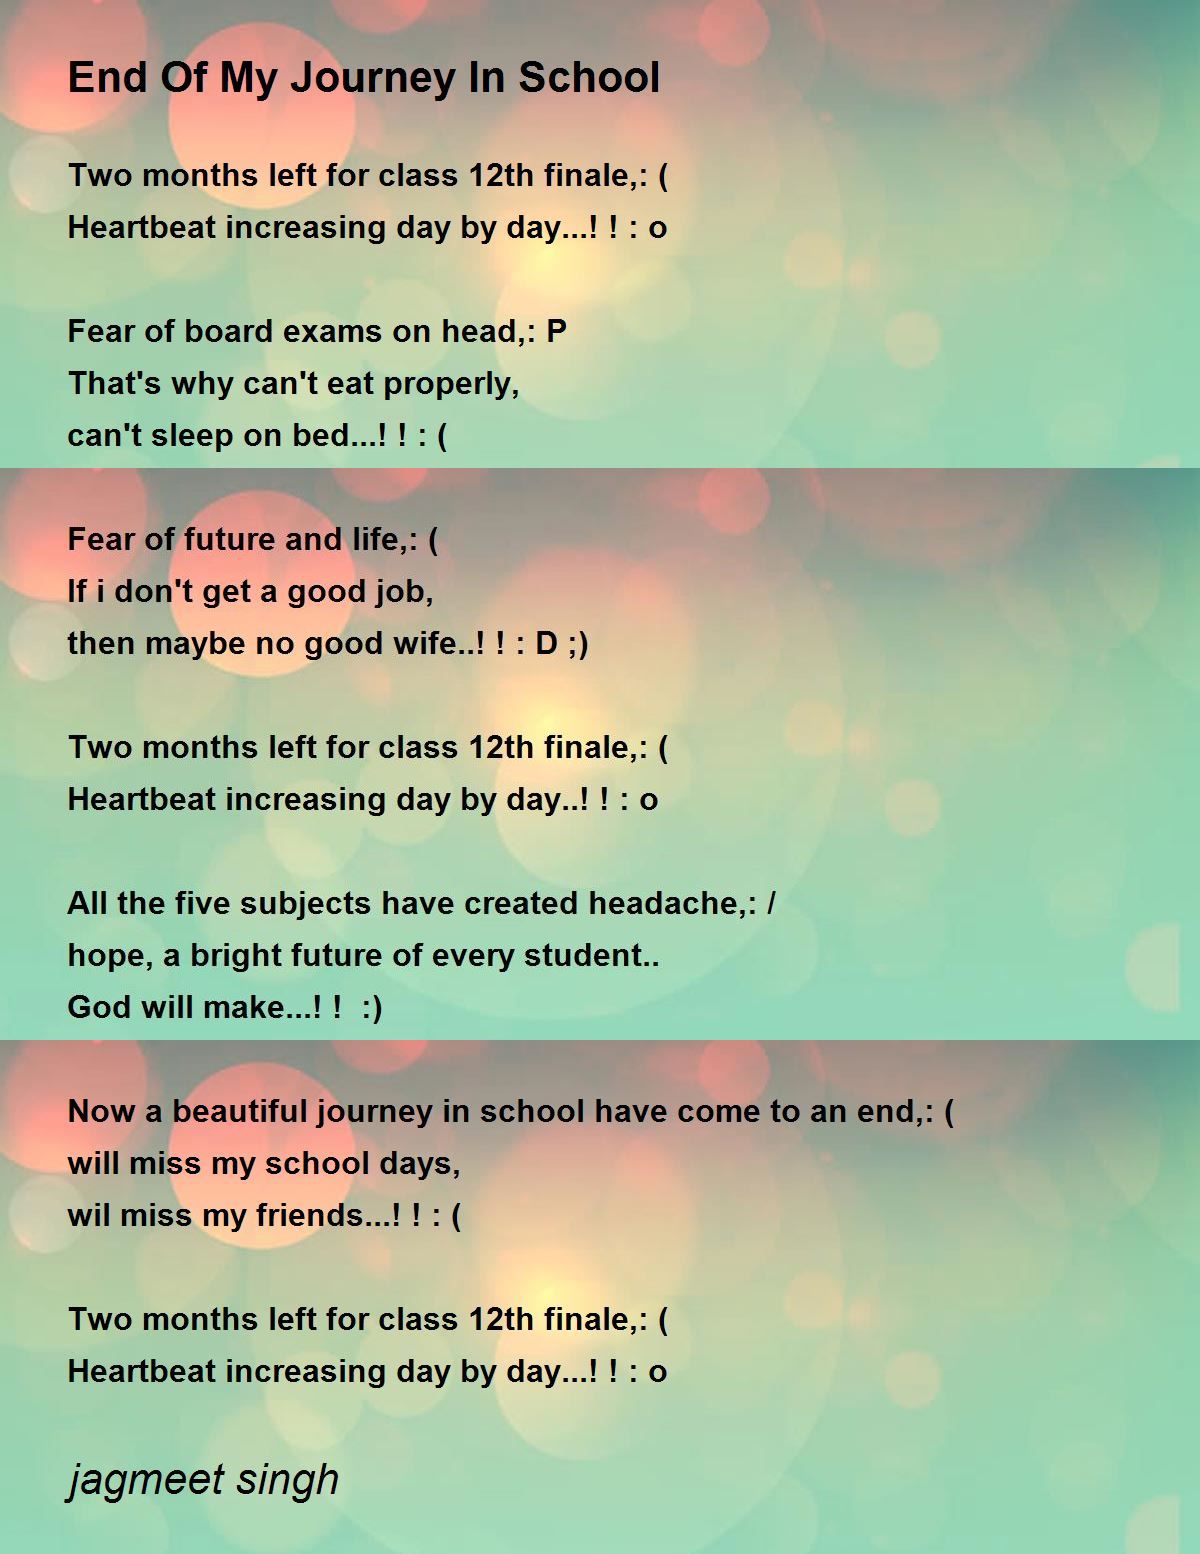 End Of My Journey In School Poem by jagmeet singh - Poem Hunter